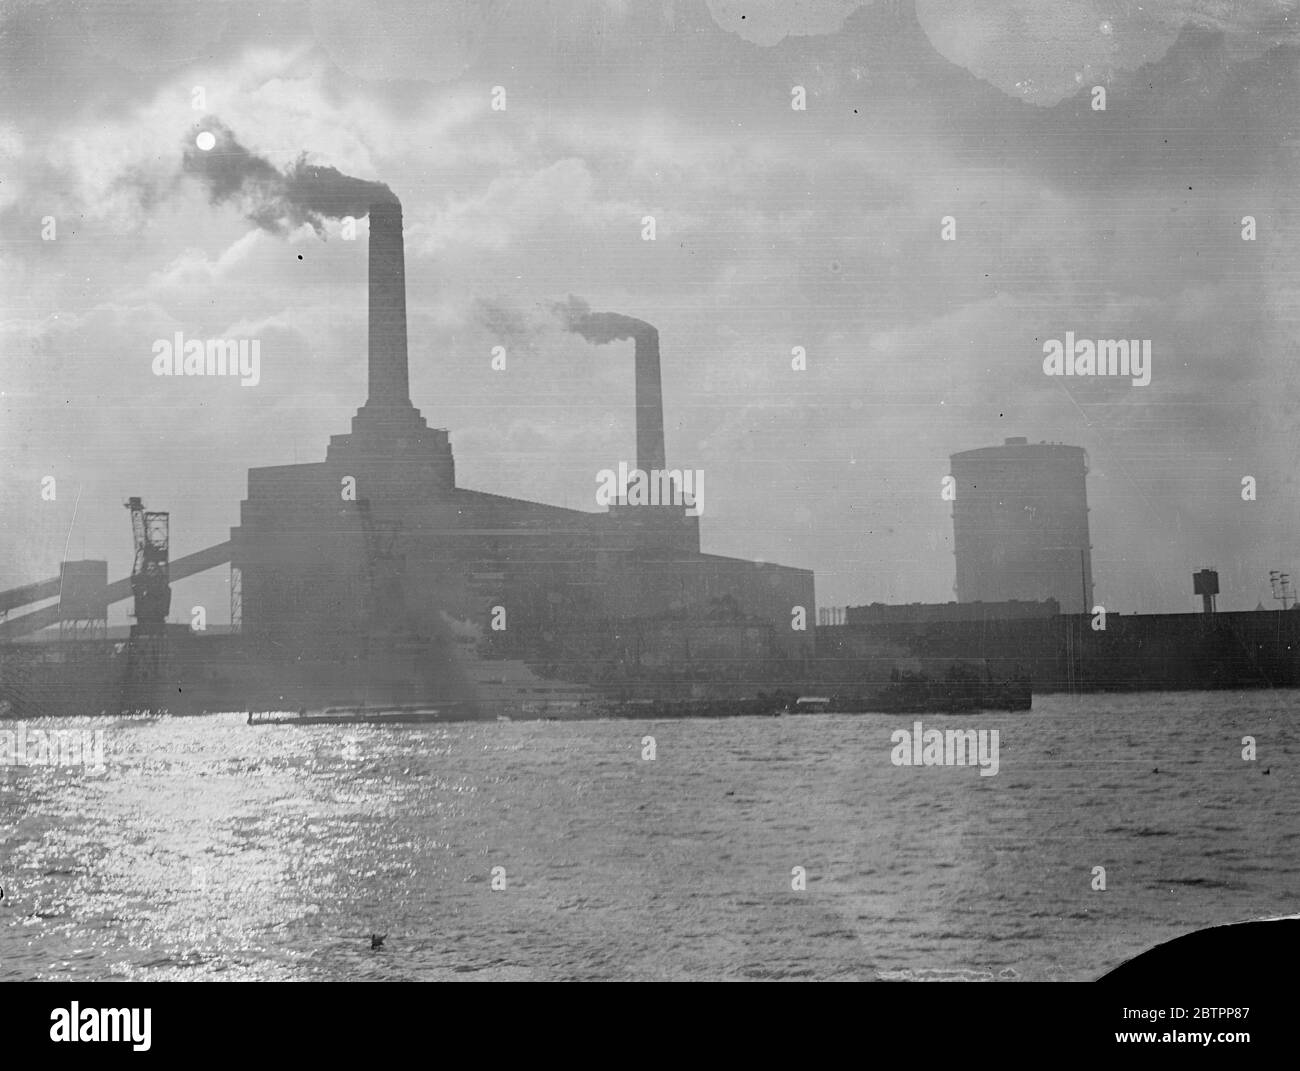 Des géants sombres du pouvoir ! Les imposantes piles gracieuses de la centrale électrique de Battersea, avec les flots de fumée qui s'enorgent contre un ciel nuageux, les grues et les remorqueurs qui se baignent sur la rivière baignée de soleil, donnent une impression de la source « industrielle Thames » de la puissance et de la richesse de Londres. 28 janvier 1938 Banque D'Images